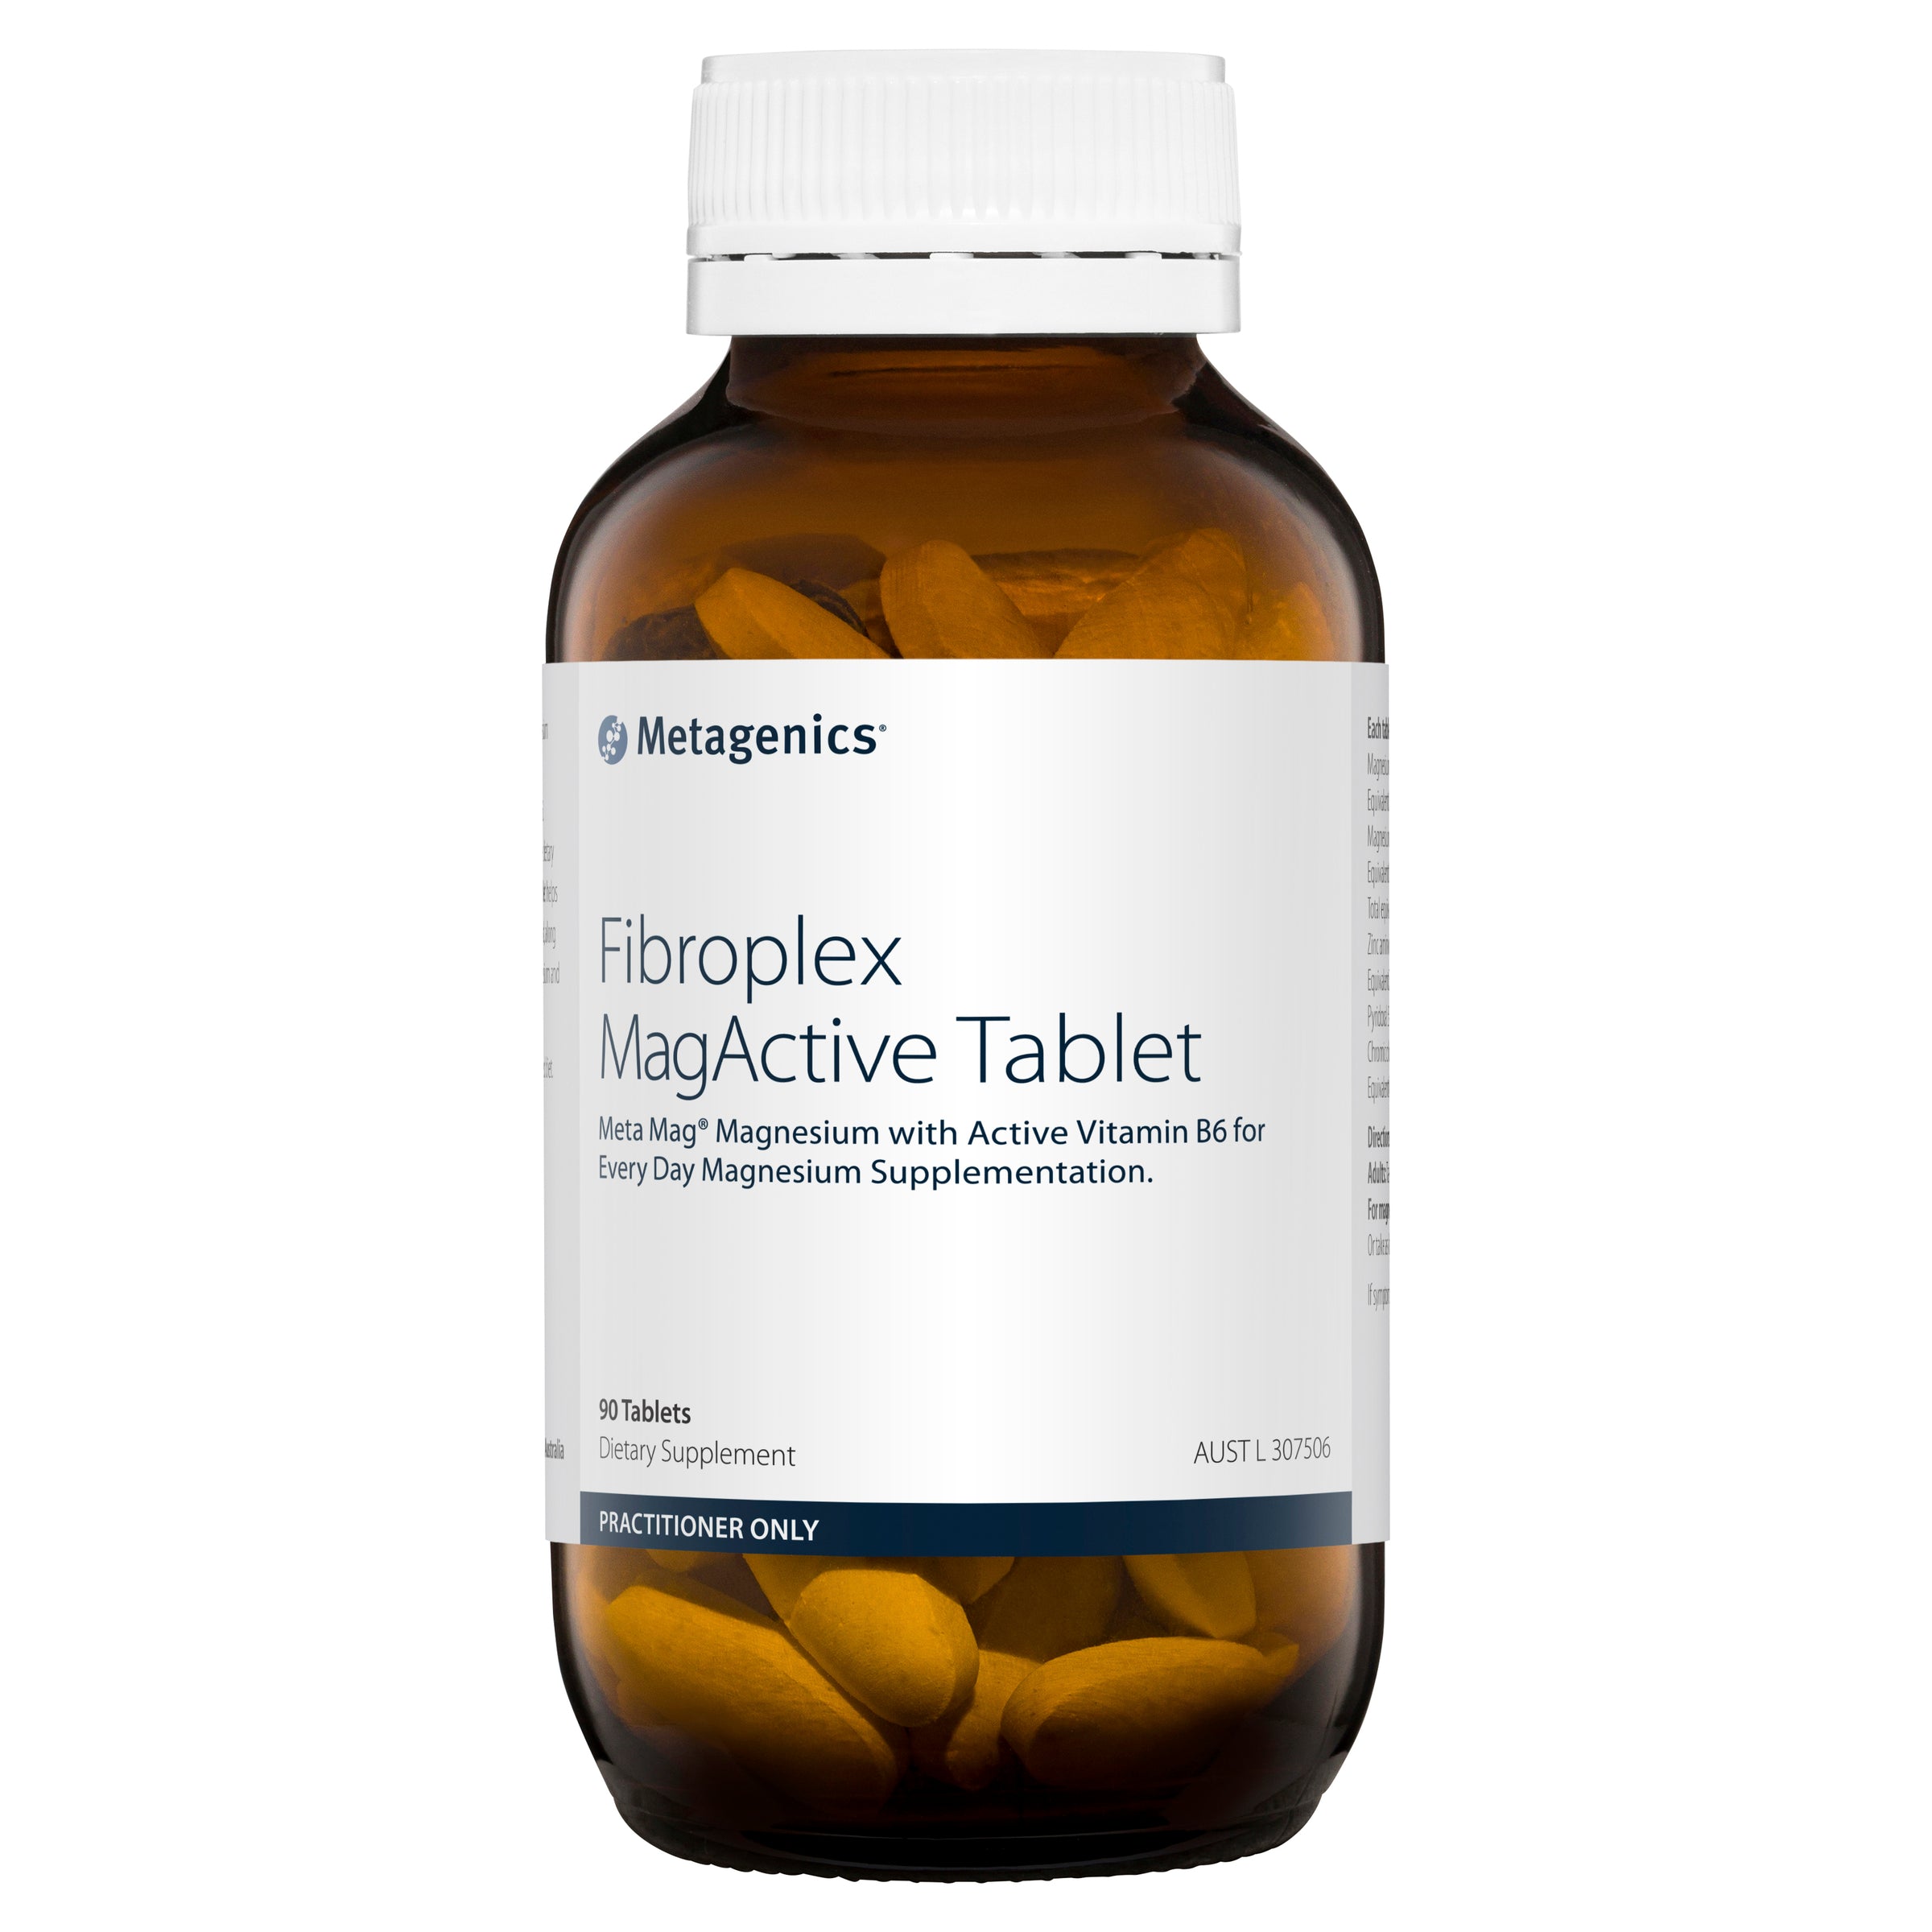 Metagenics Fibroplex MagActive Tablet 90 Tablets